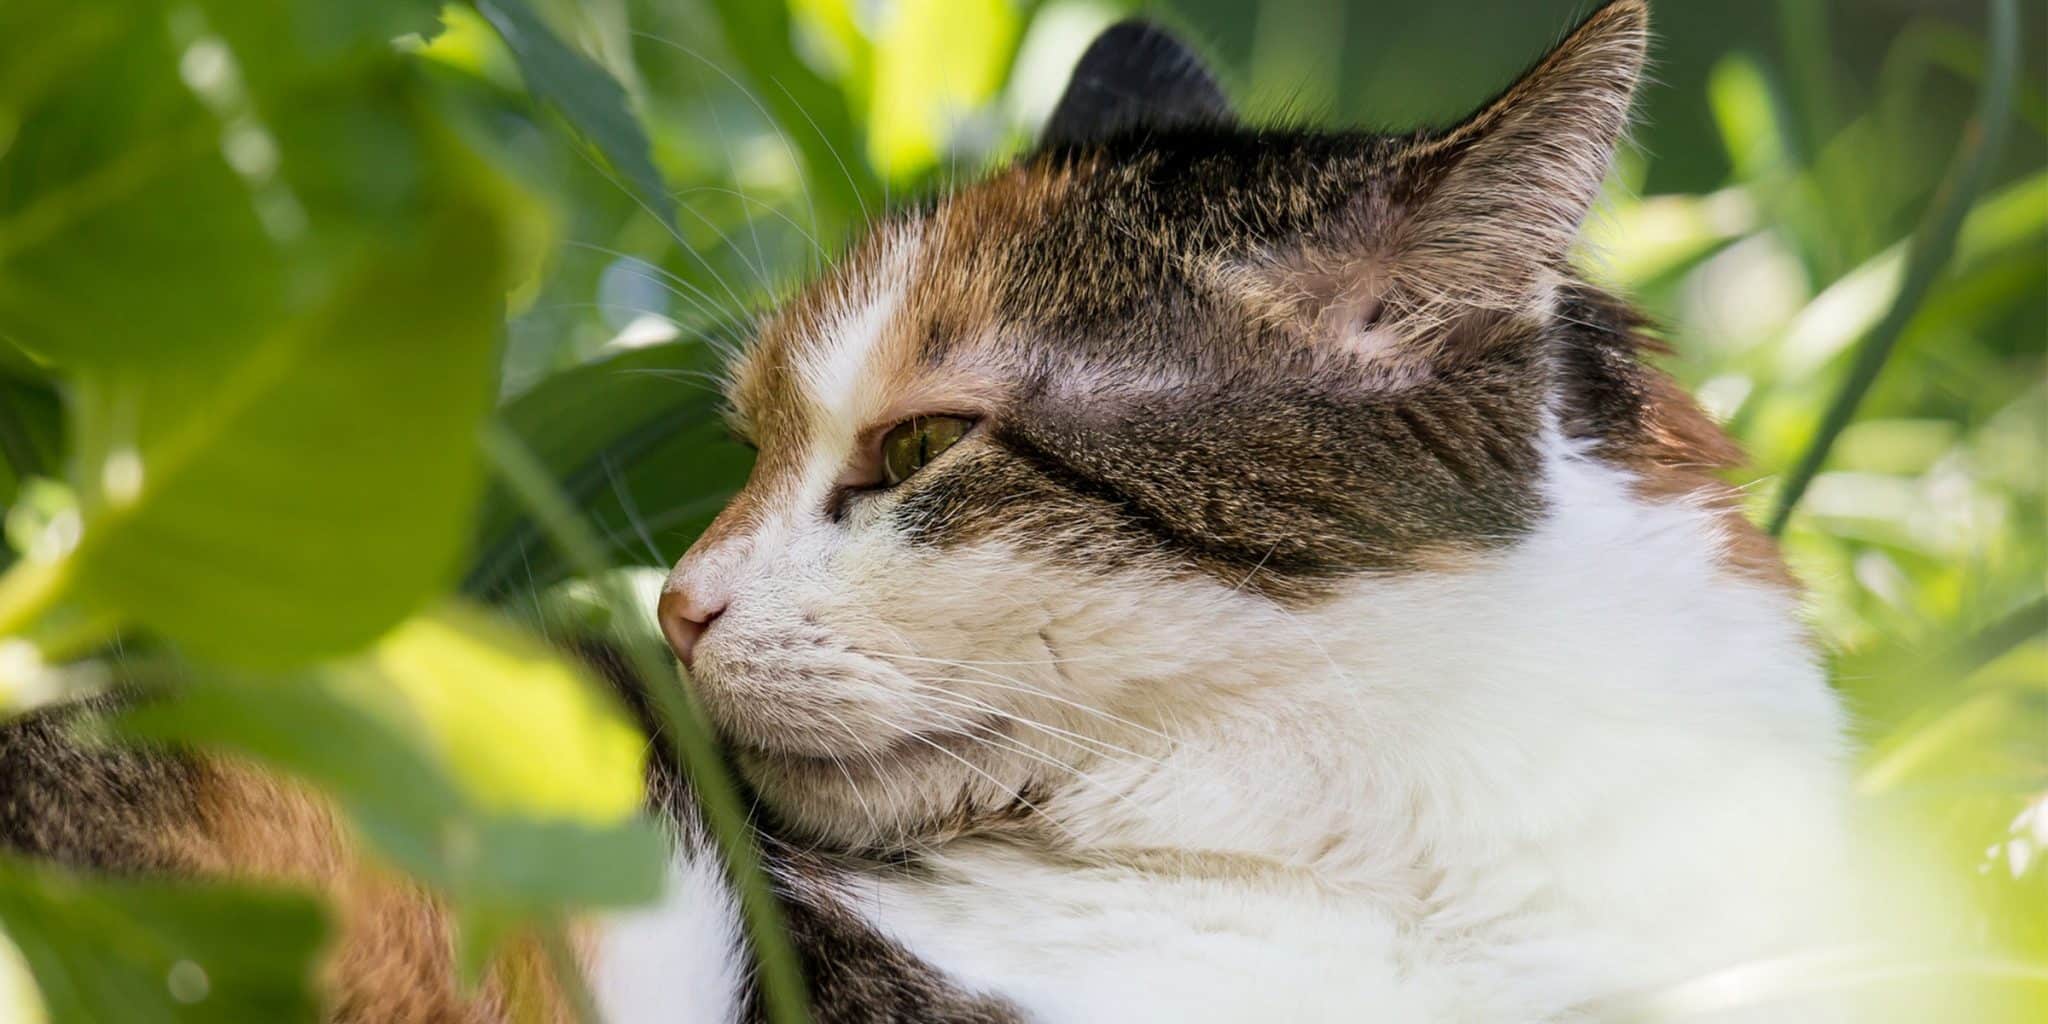 Les chats domestiques Felis Catus : découvrez comment ils reconnaissent leur nom parmi les autres mots